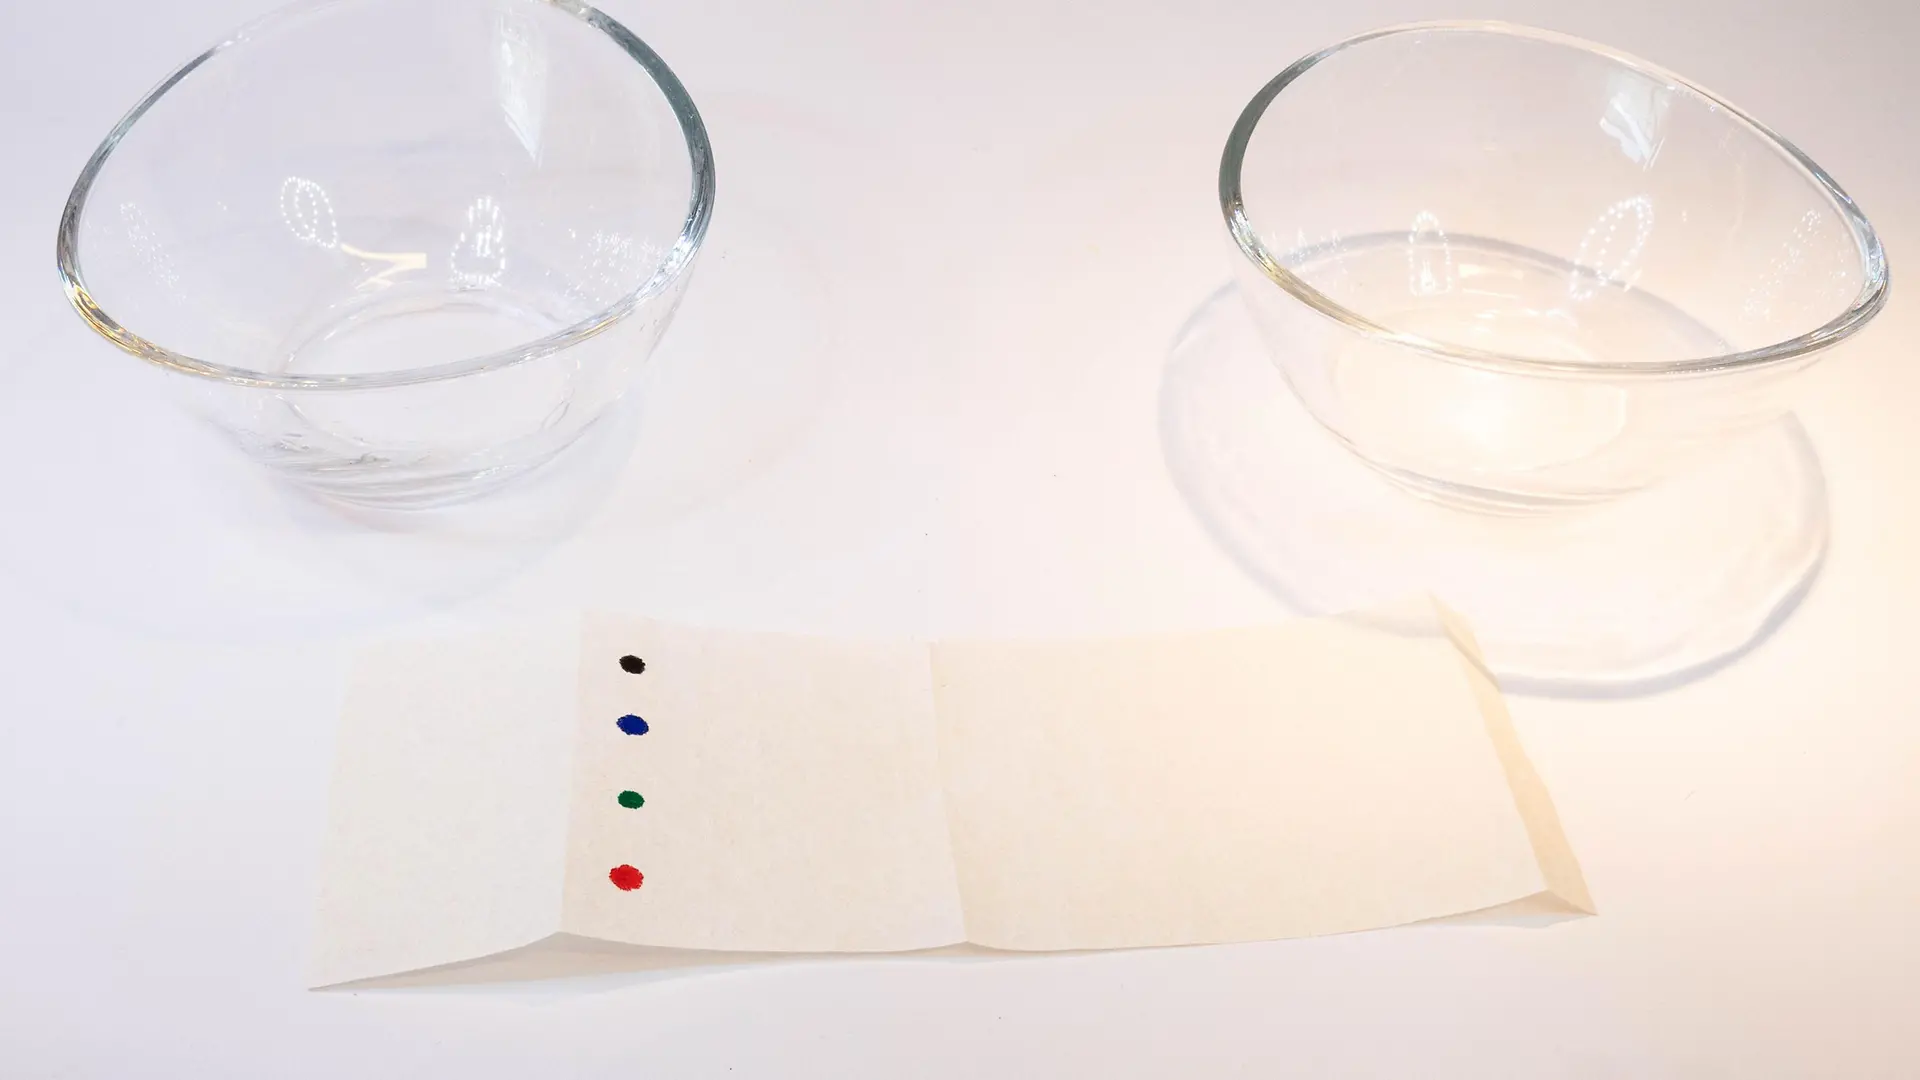 listra de papel com pontos coloridos na frente de duas tigelas de vidro